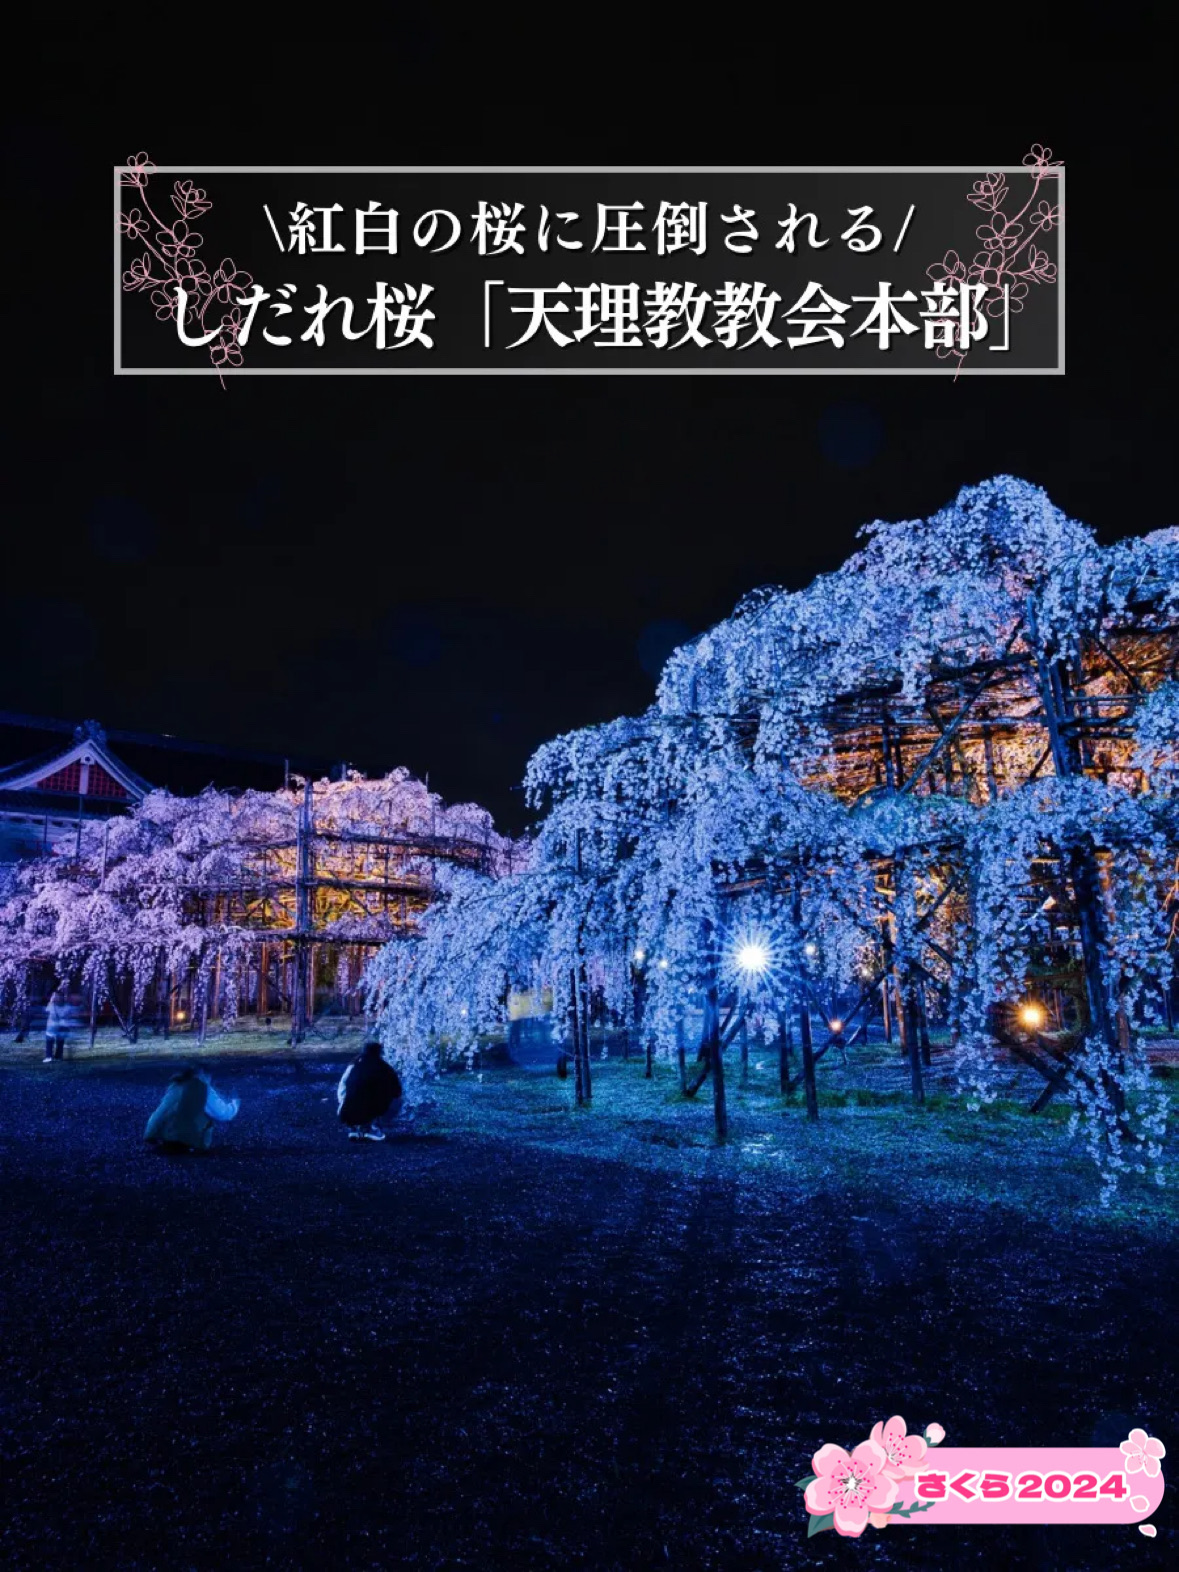 [奈良×樱花]巨大的红白垂枝樱花🌸限时点灯1小时